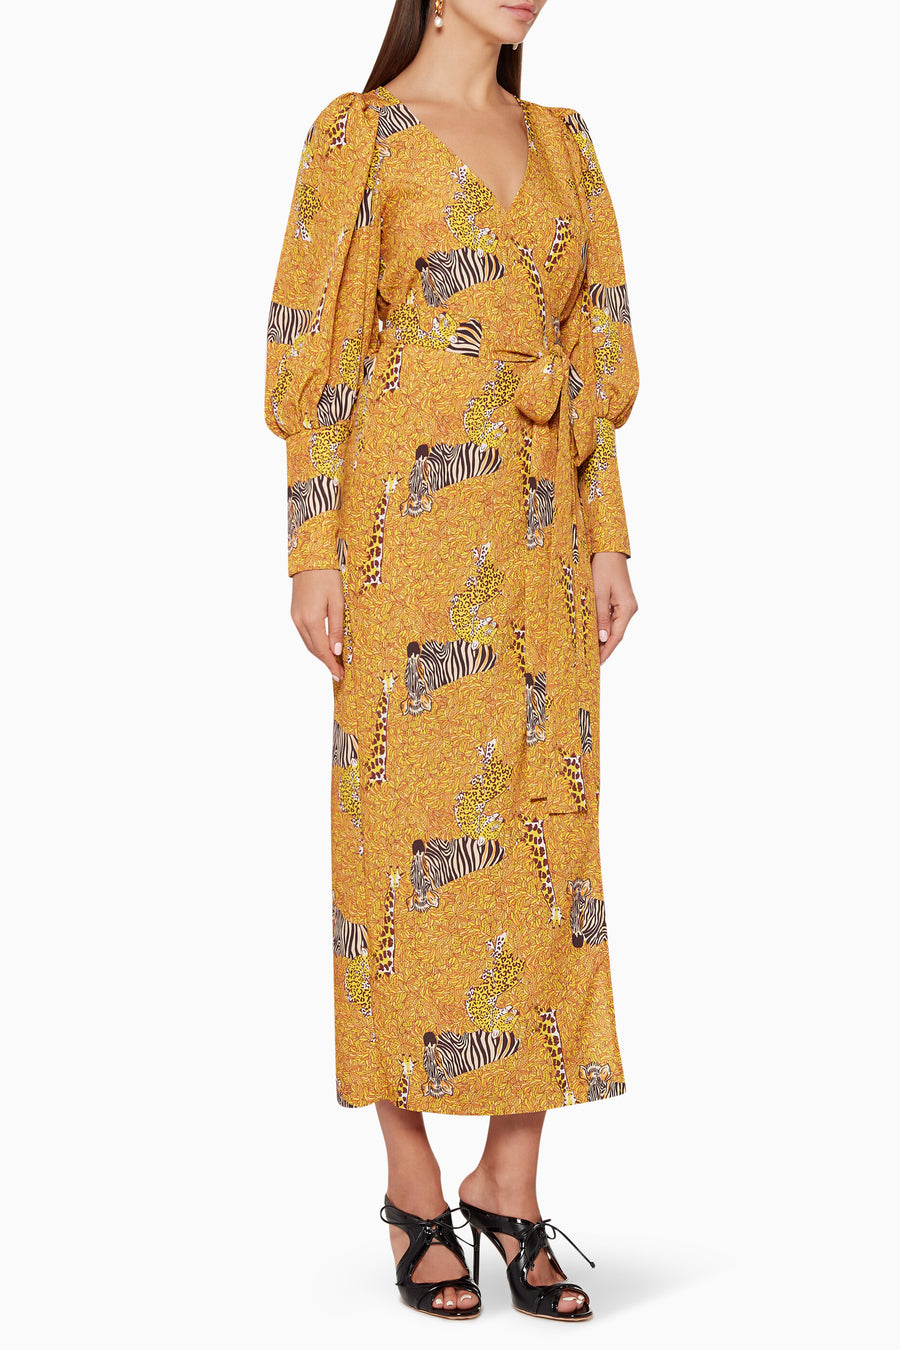 Rhode Aspen Serengeti Wrap Maxi Dress, Size 8